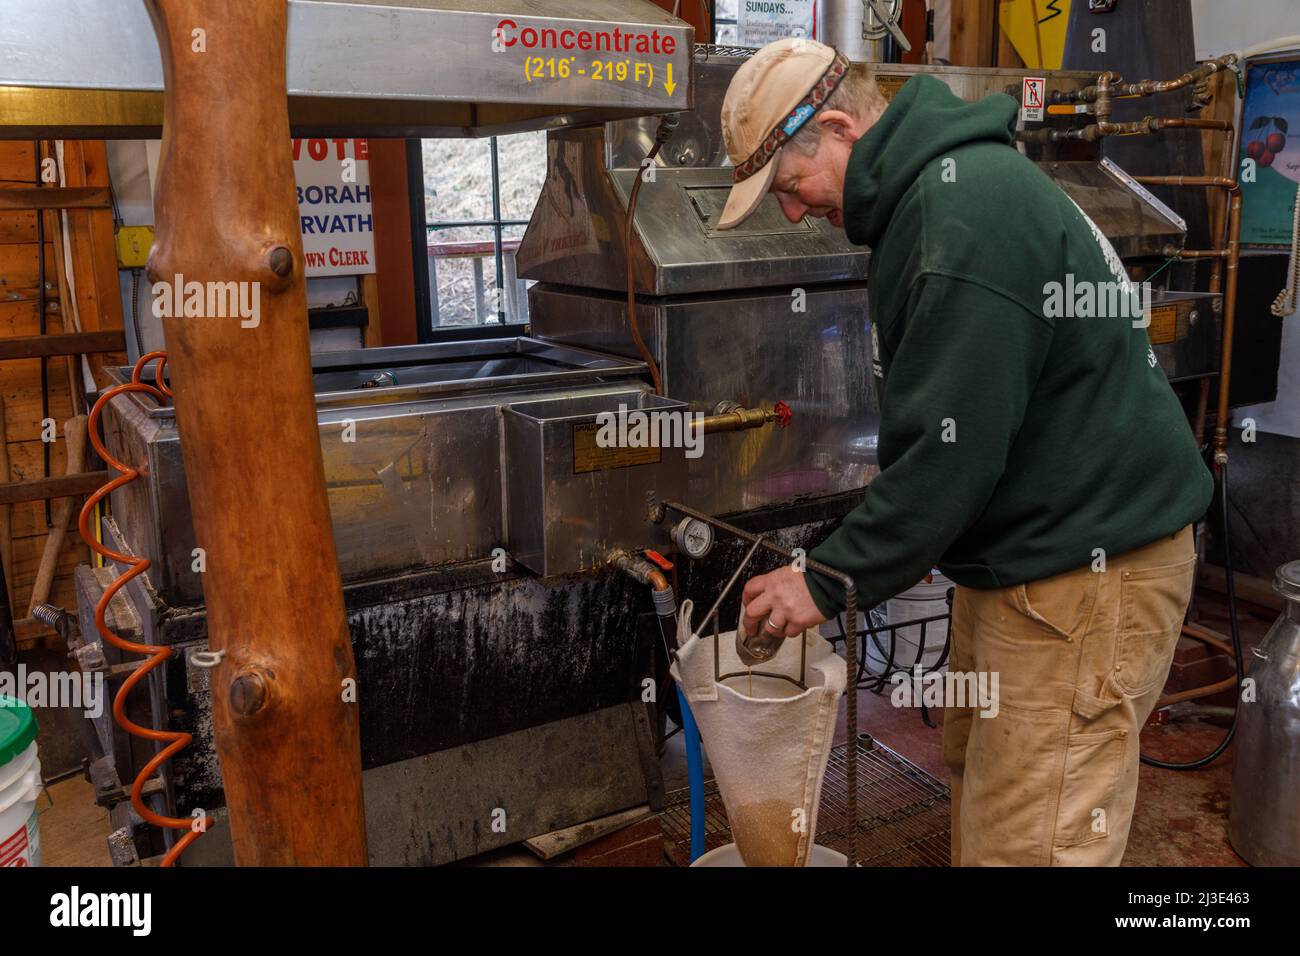 Preparazione dello sciroppo d'acero: L'uomo pulisce la 'sabbia rugar' dal suo evaporatore. Cherry Valley, Otsego County, New York state. Foto Stock